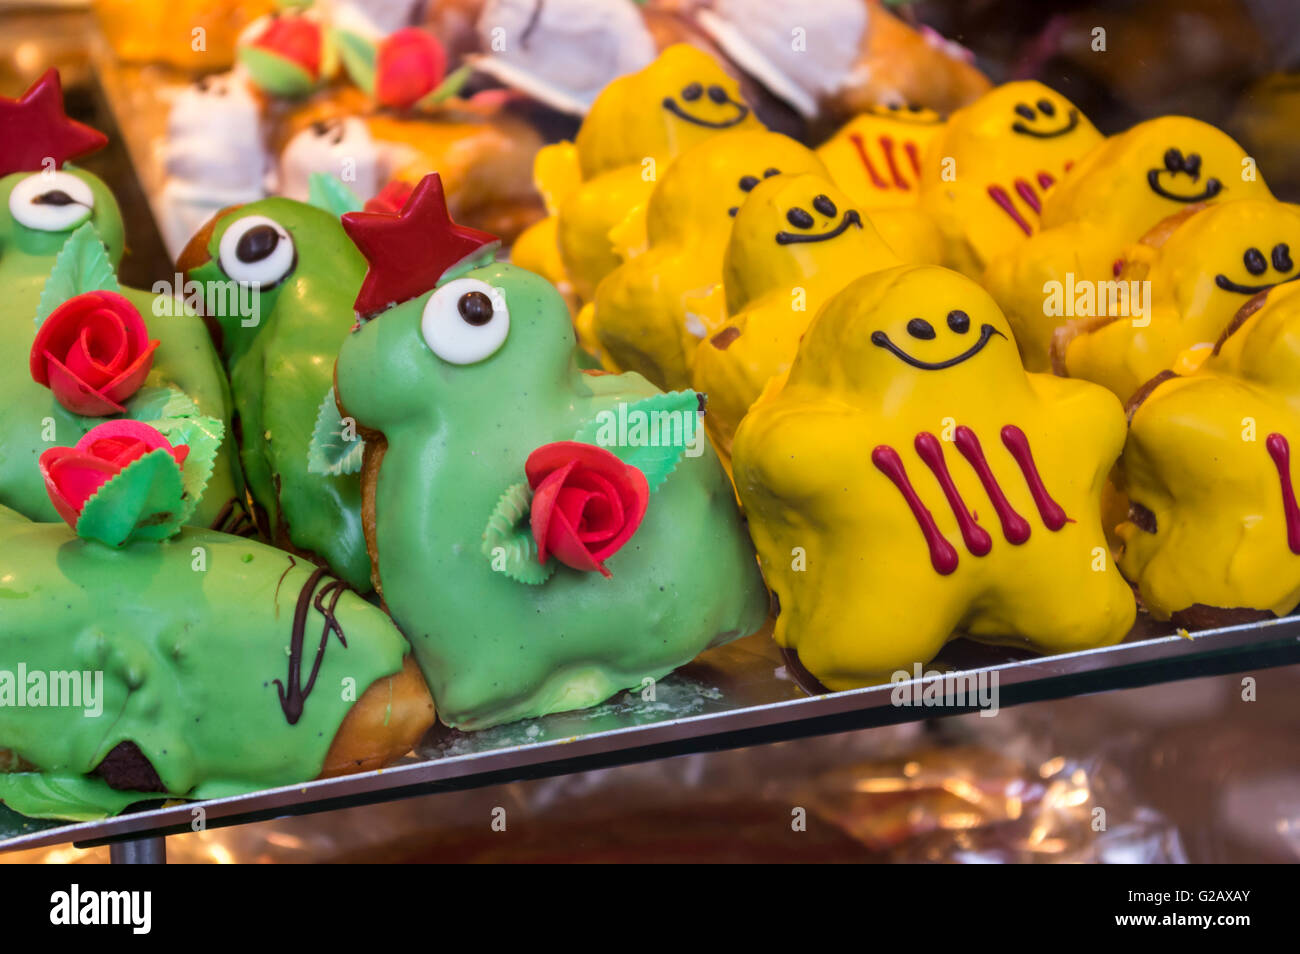 Les cookies en forme de Saint George et le dragon, à l'occasion de la Diada de Sant Jordi (Saint George's Day), le 23 avril, Barcelone. Banque D'Images